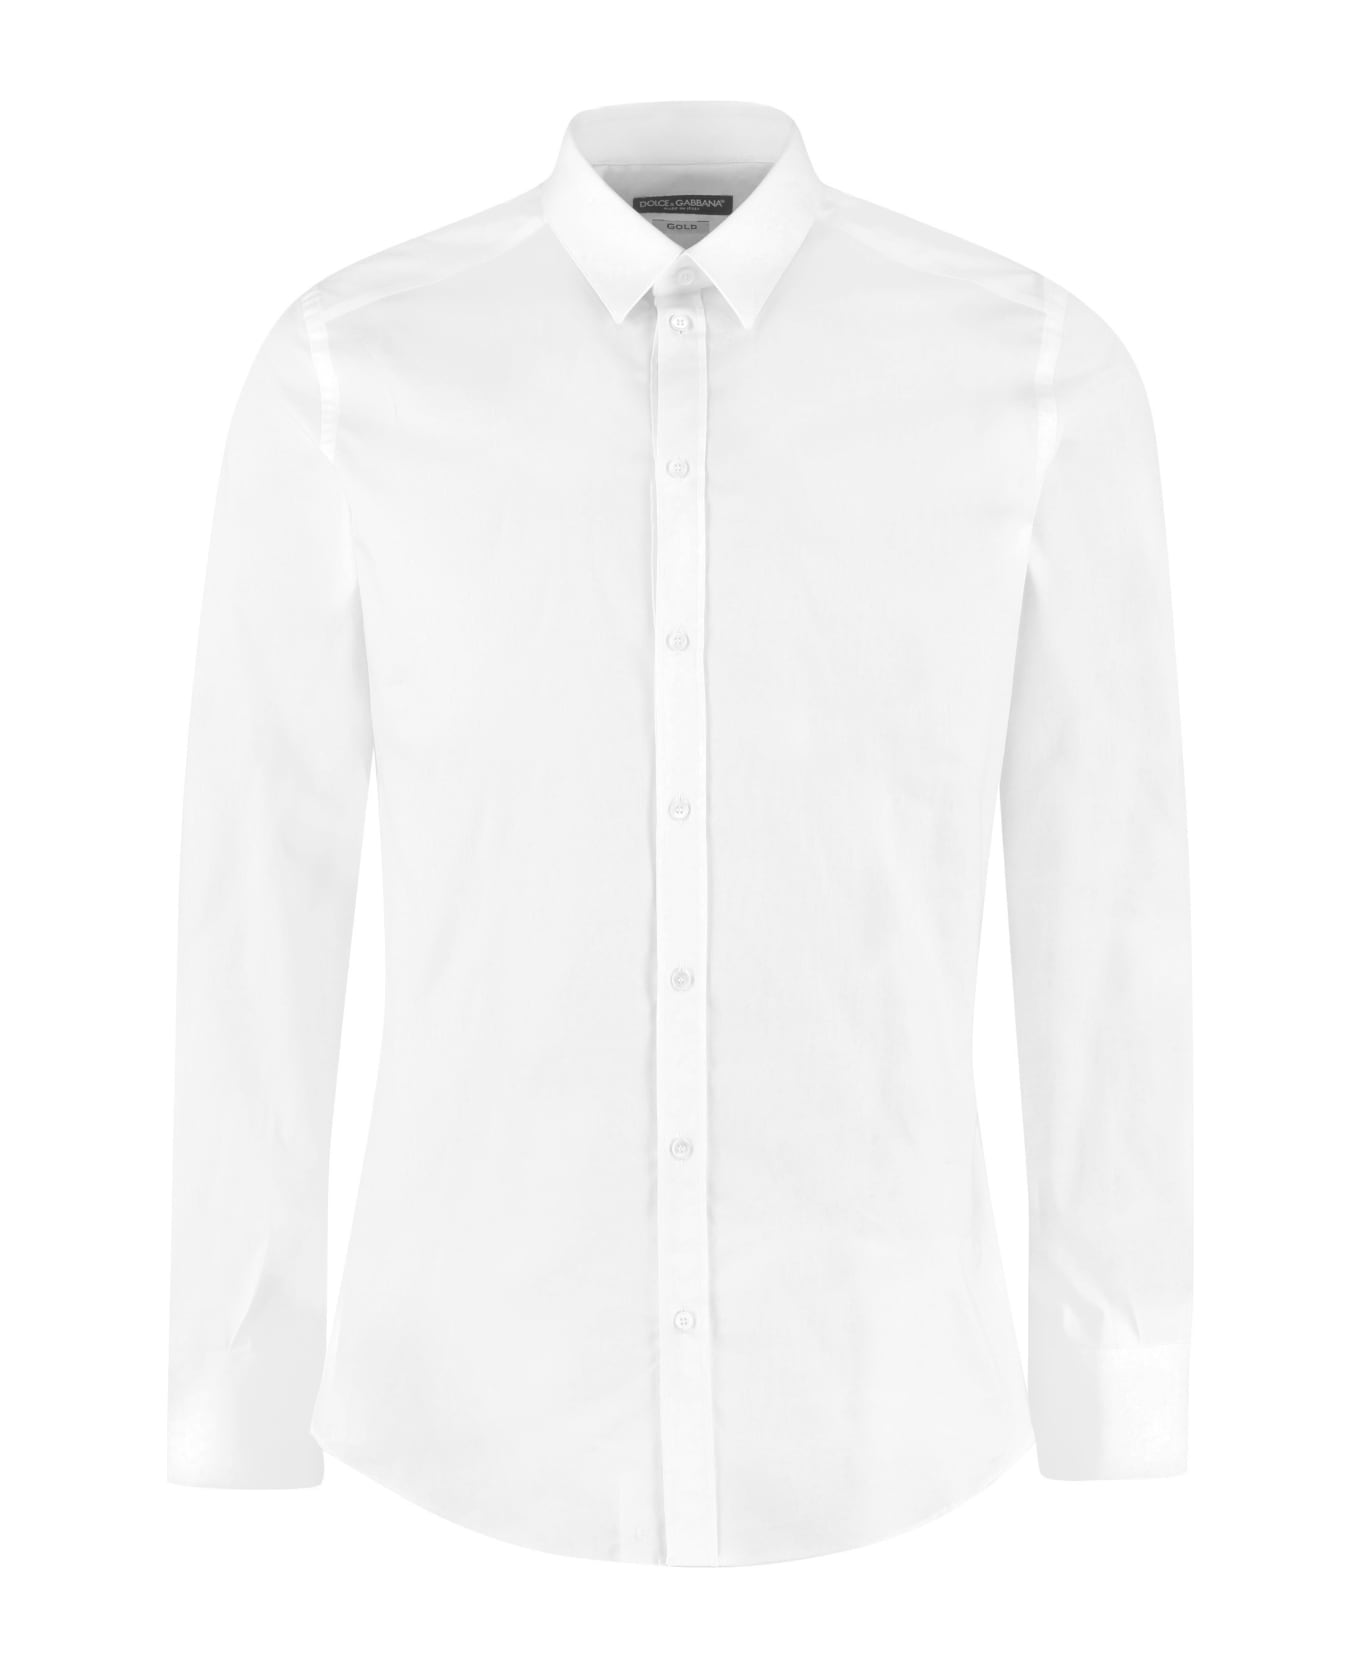 Dolce & Gabbana Classic Italian Collar Cotton Shirt - White